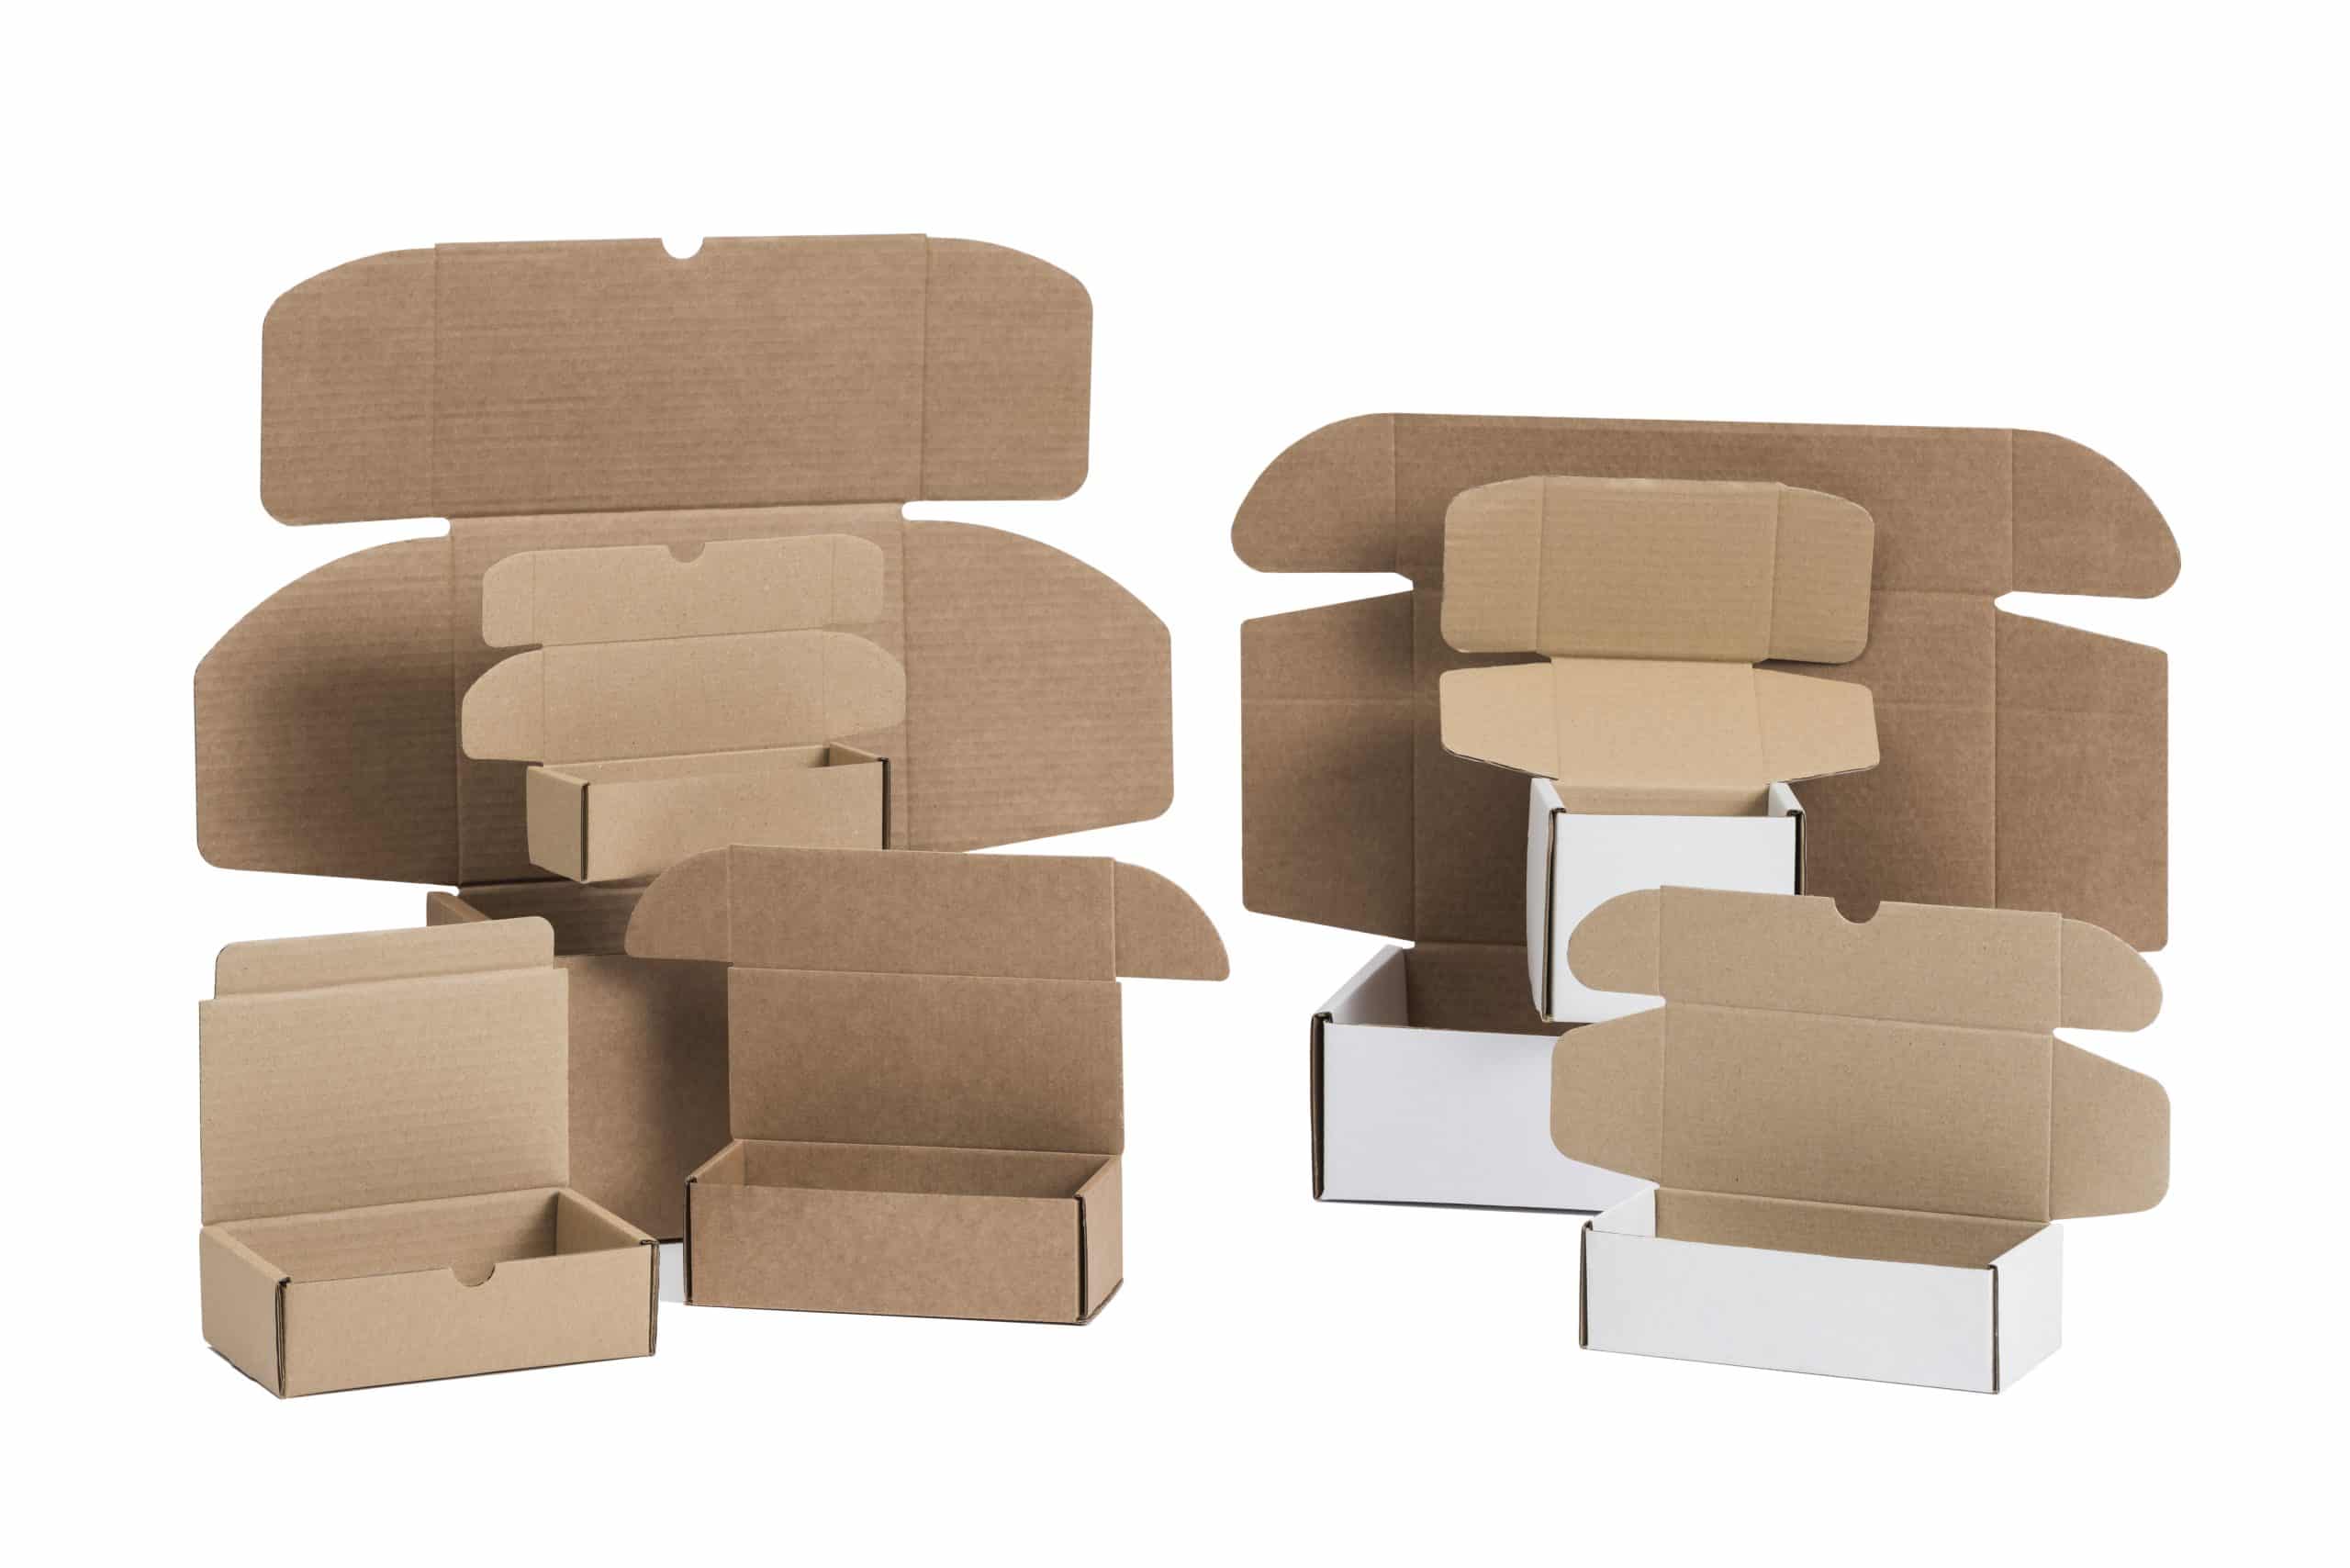 Cajas de cartón troqueladas con asas laterales para la manipulación de sus productos de manera cómoda, las realizamos bajo pedido